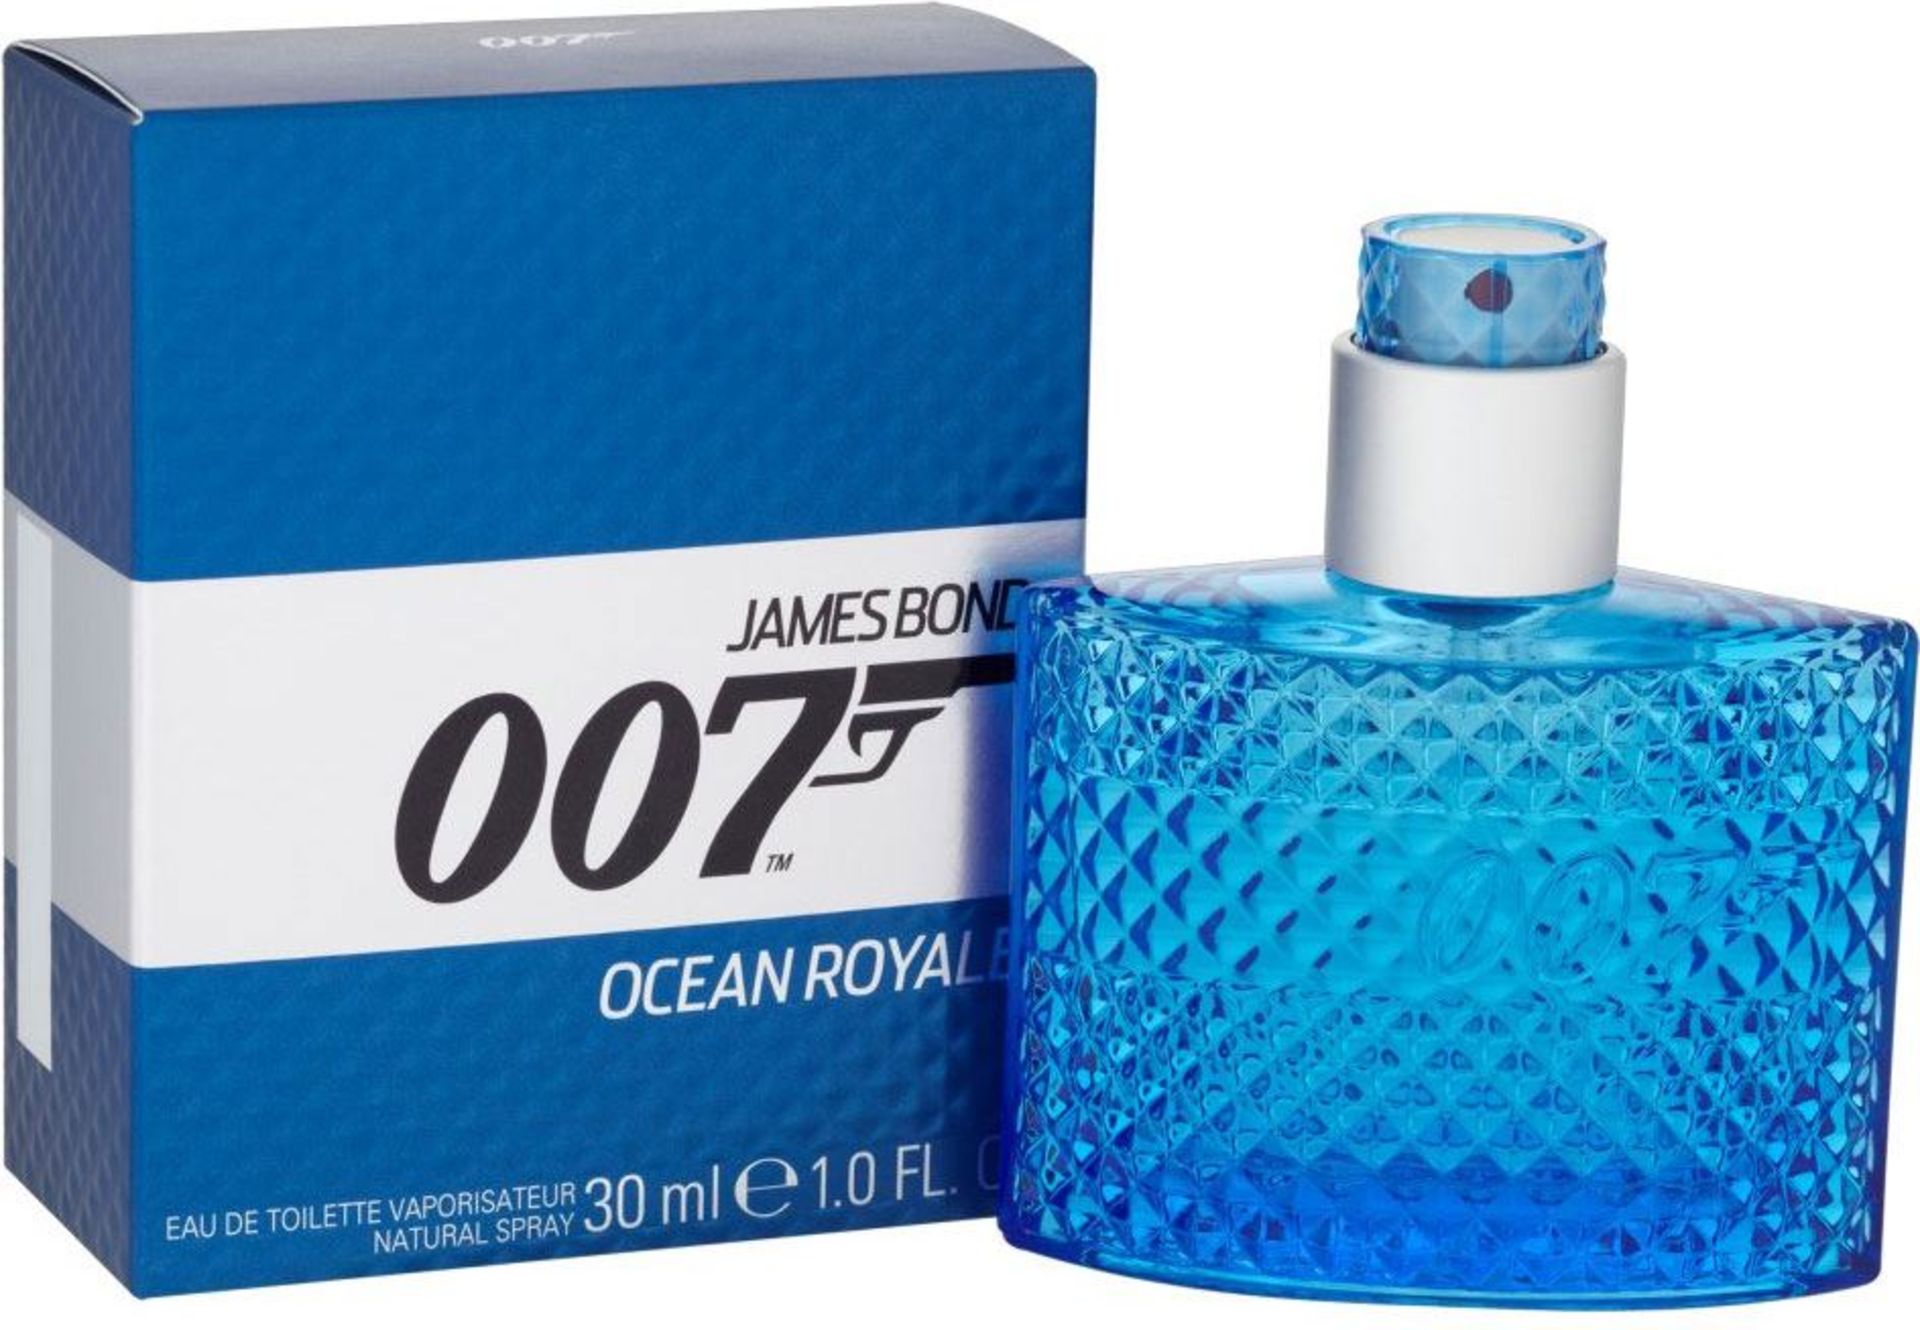 V Brand New James Bond 007 OCEAN ROYALE EAU DE TOILETTE VAPORISATEUR X 2 YOUR BID PRICE TO BE